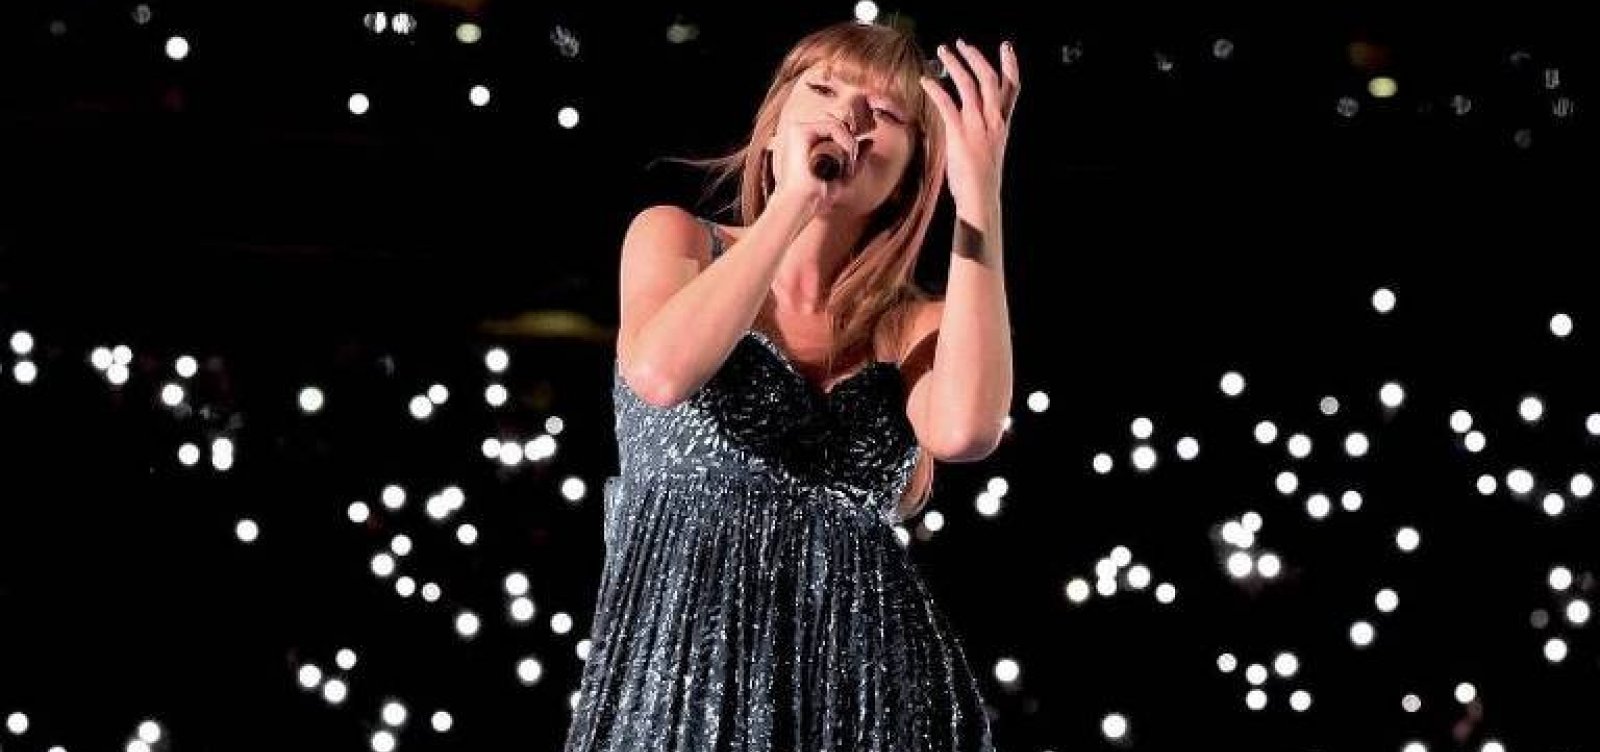 Produtora dos shows de Taylor Swift pode ser multada em até R$ 13 milhões pelo Procon-RJ